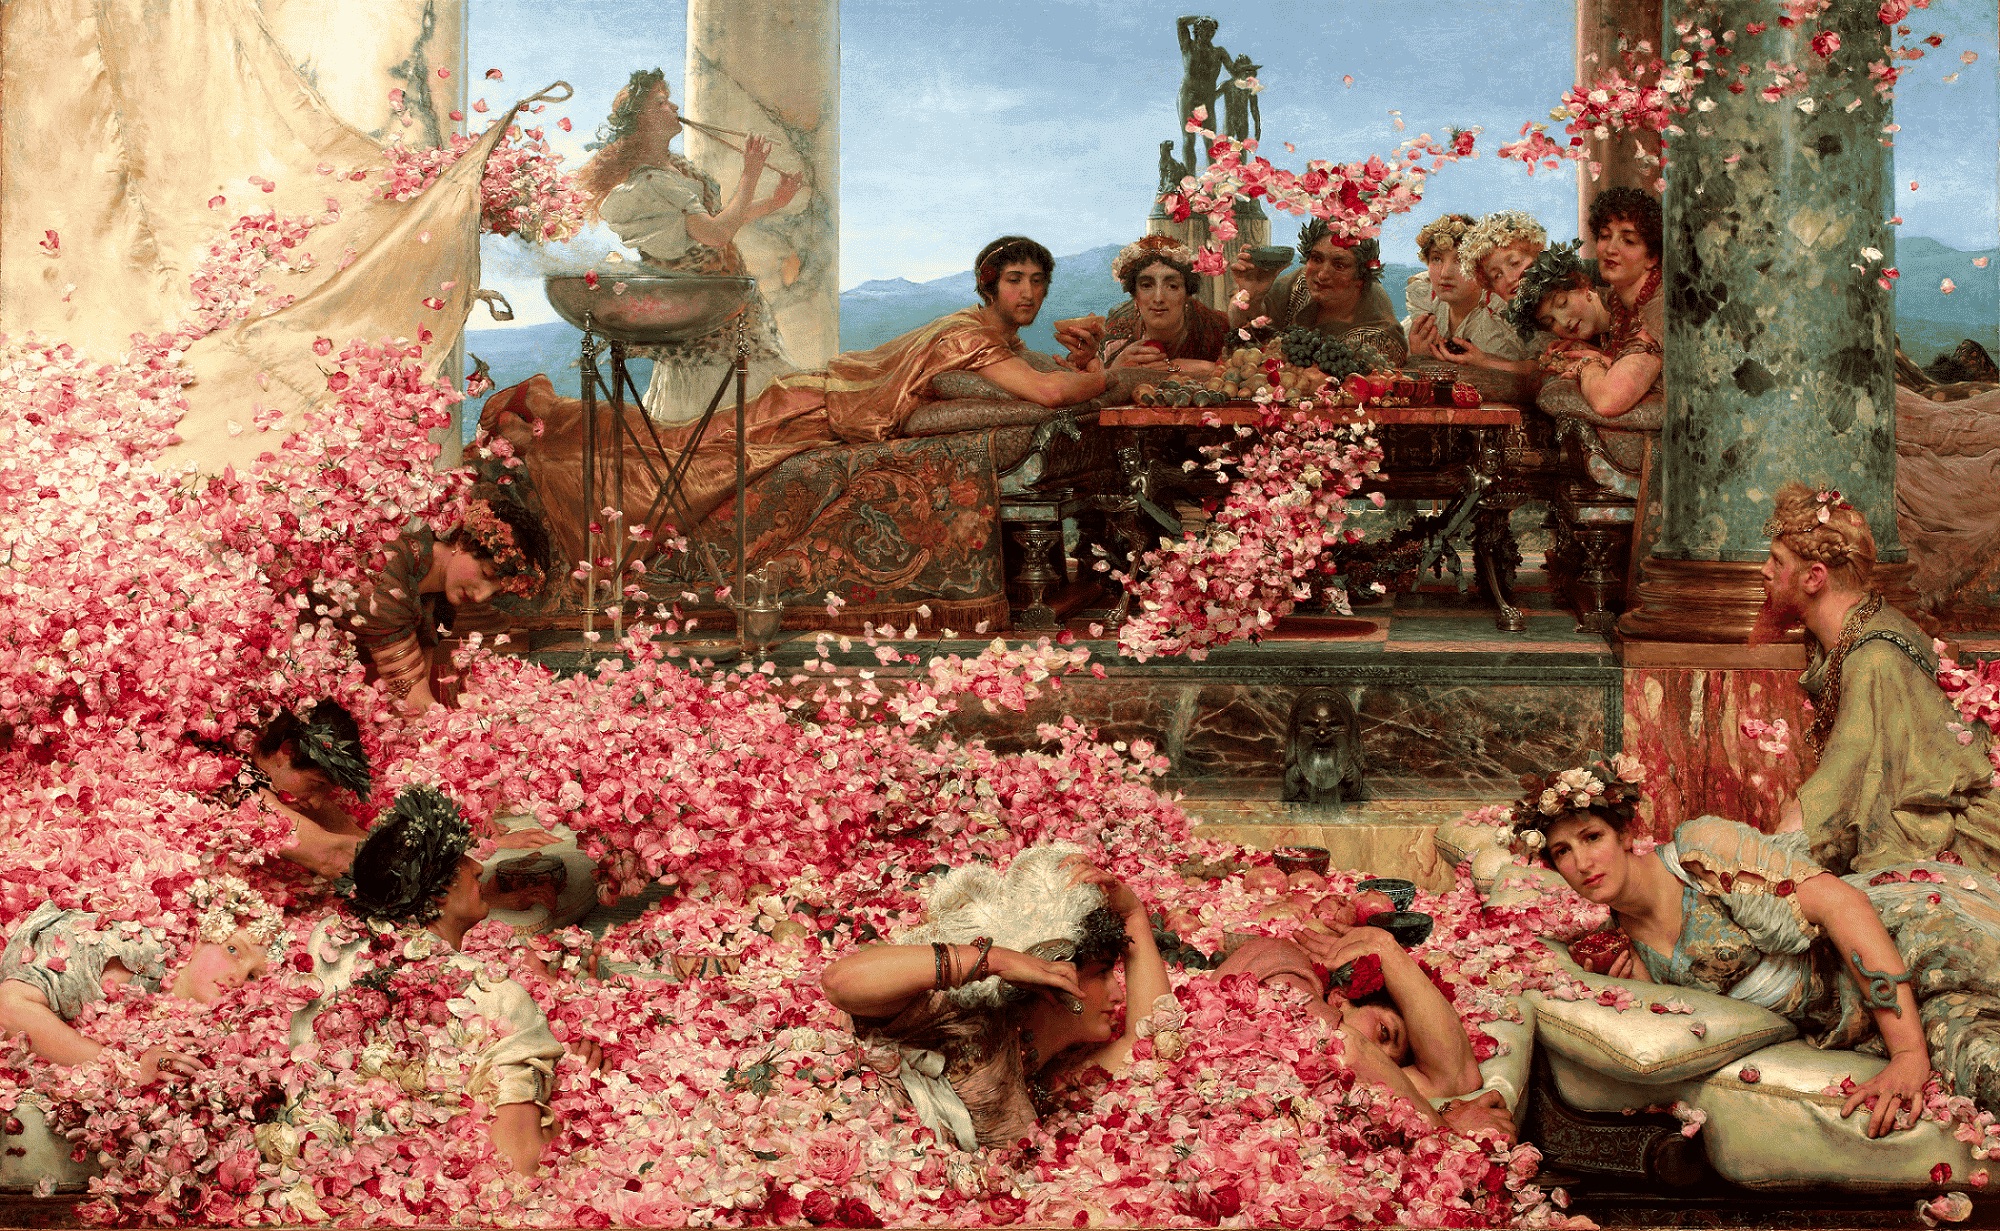 Le tableau Les Roses d'Héliogabale de Lawrence Alma-Tadema date de 1888 et représente un épisode fictif de la vie de l'empereur romain Héliogabale, où ce dernier est entouré de roses.